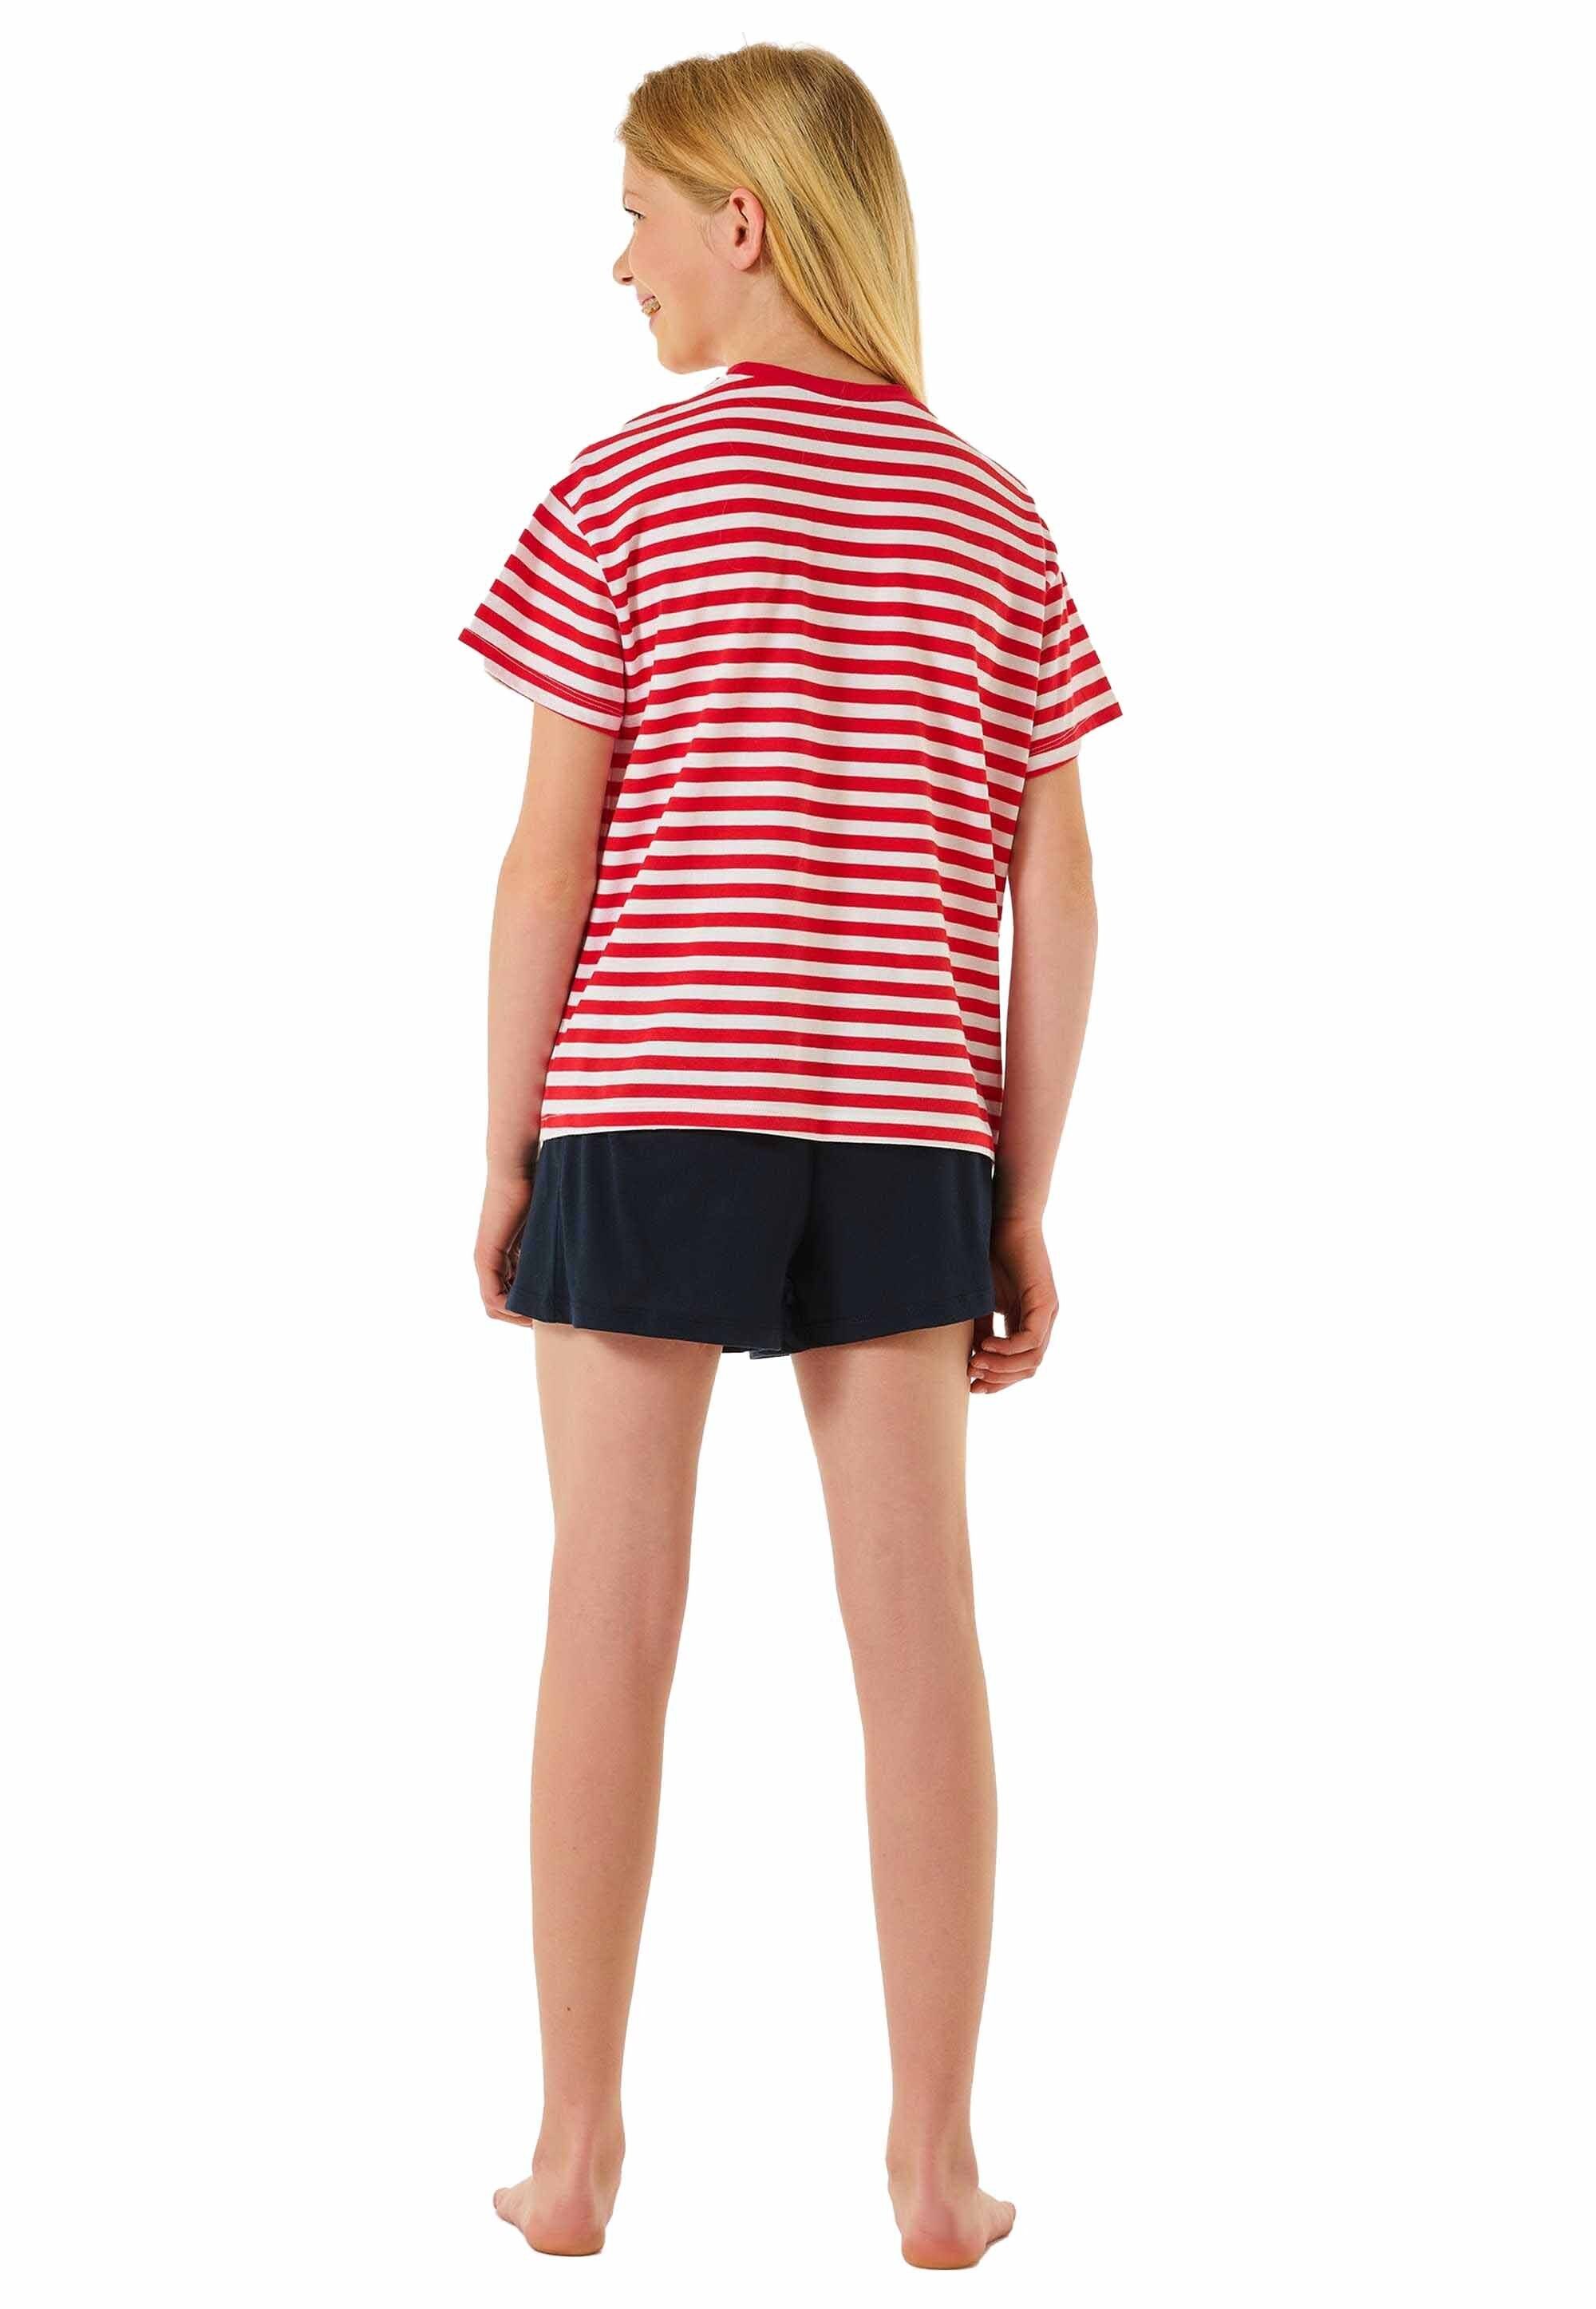 Teens Mädchen Schlafanzug Set Schiesser Pyjama - Rot/Weiß/Dunkelblau kurz,